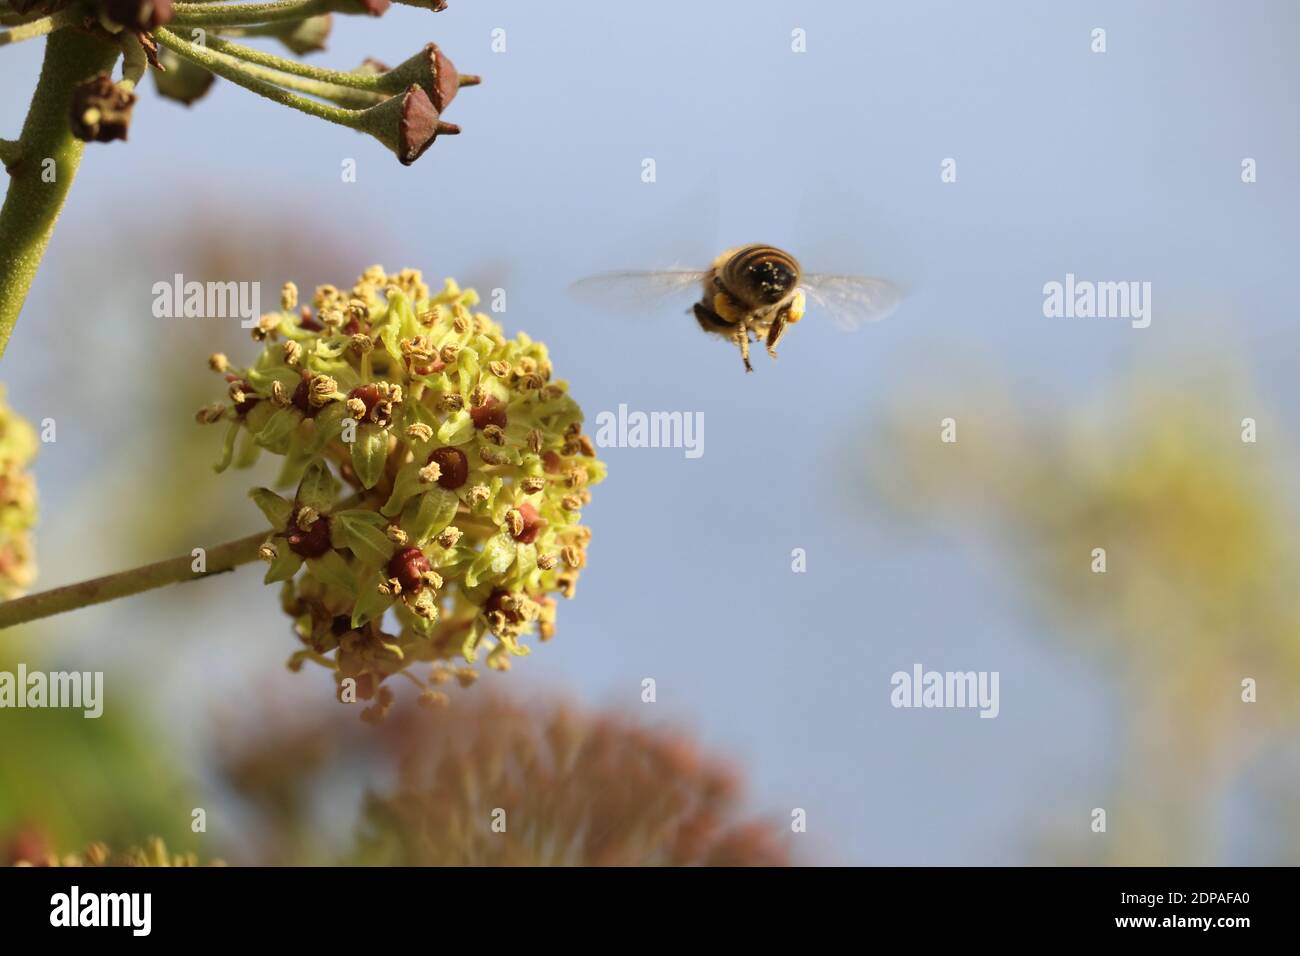 Eine Biene im Anflug auf eine Blütendolde des Efeu; der noch im November blühende Efeu ist eine wichtige und letzte natürliche Futterquelle Foto Stock